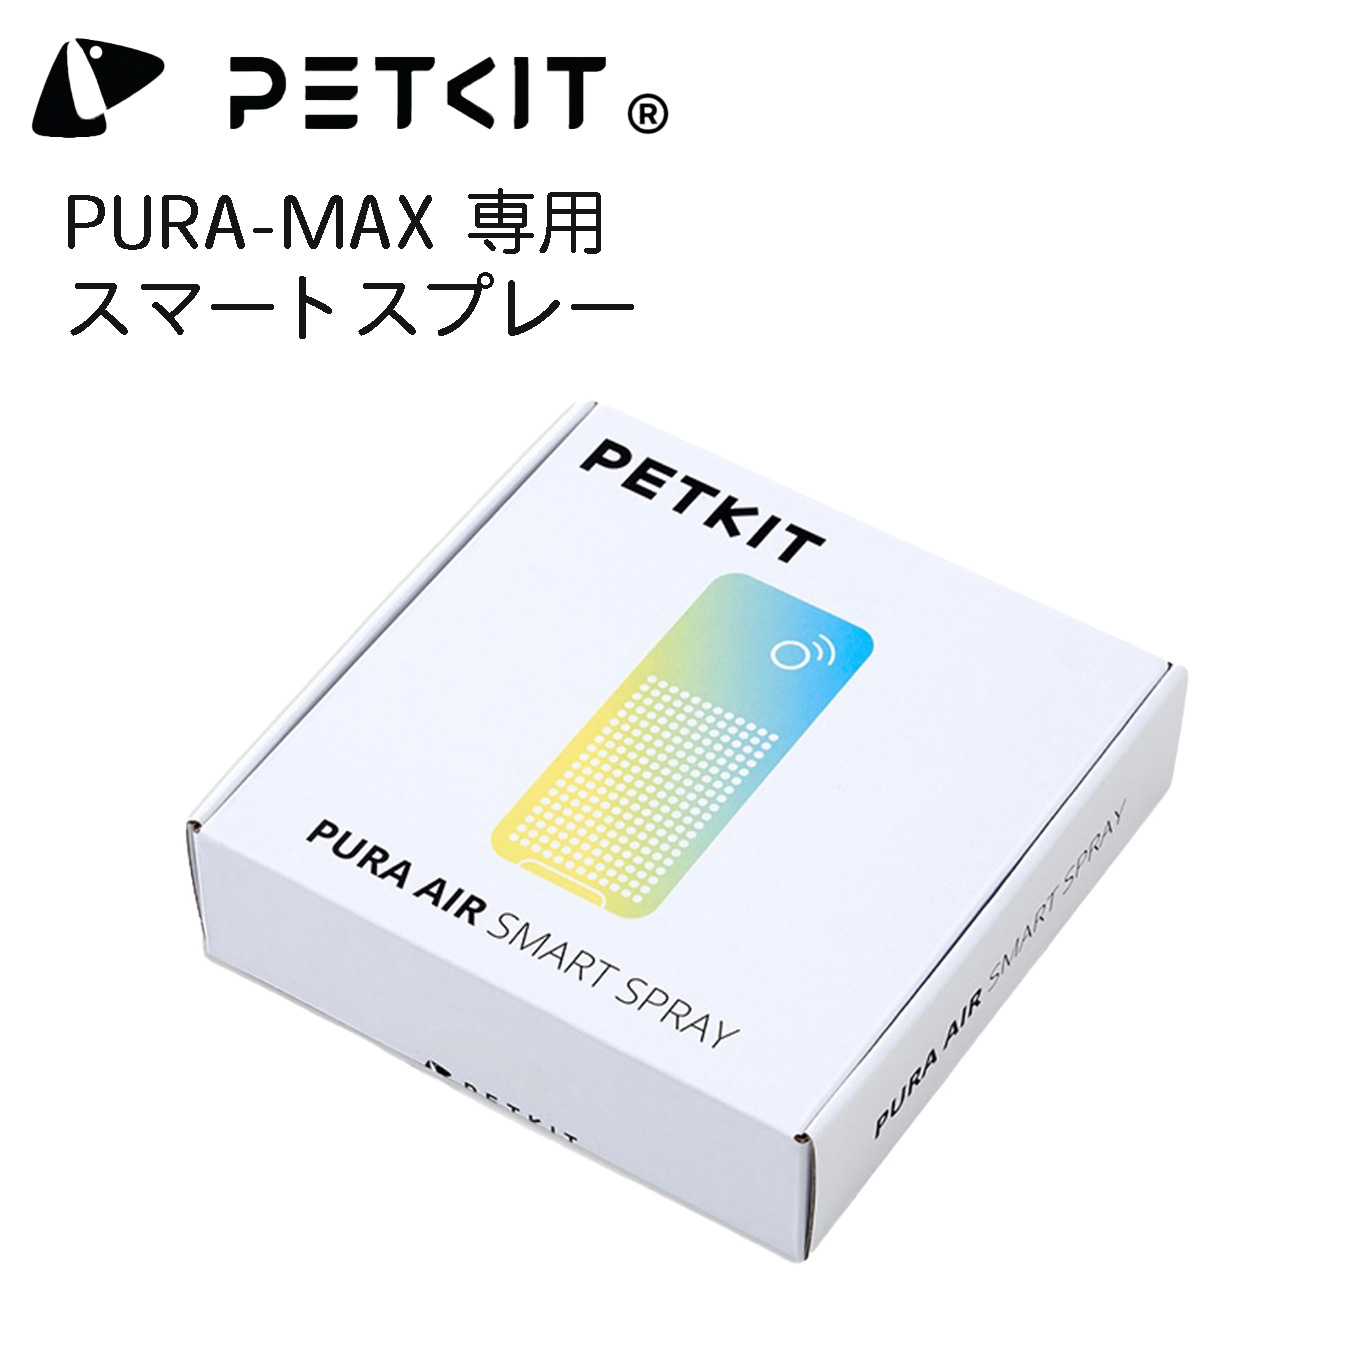 PETKIT-PURA-MAX】専用スマートスプレー オプション ペットキット ねこ 